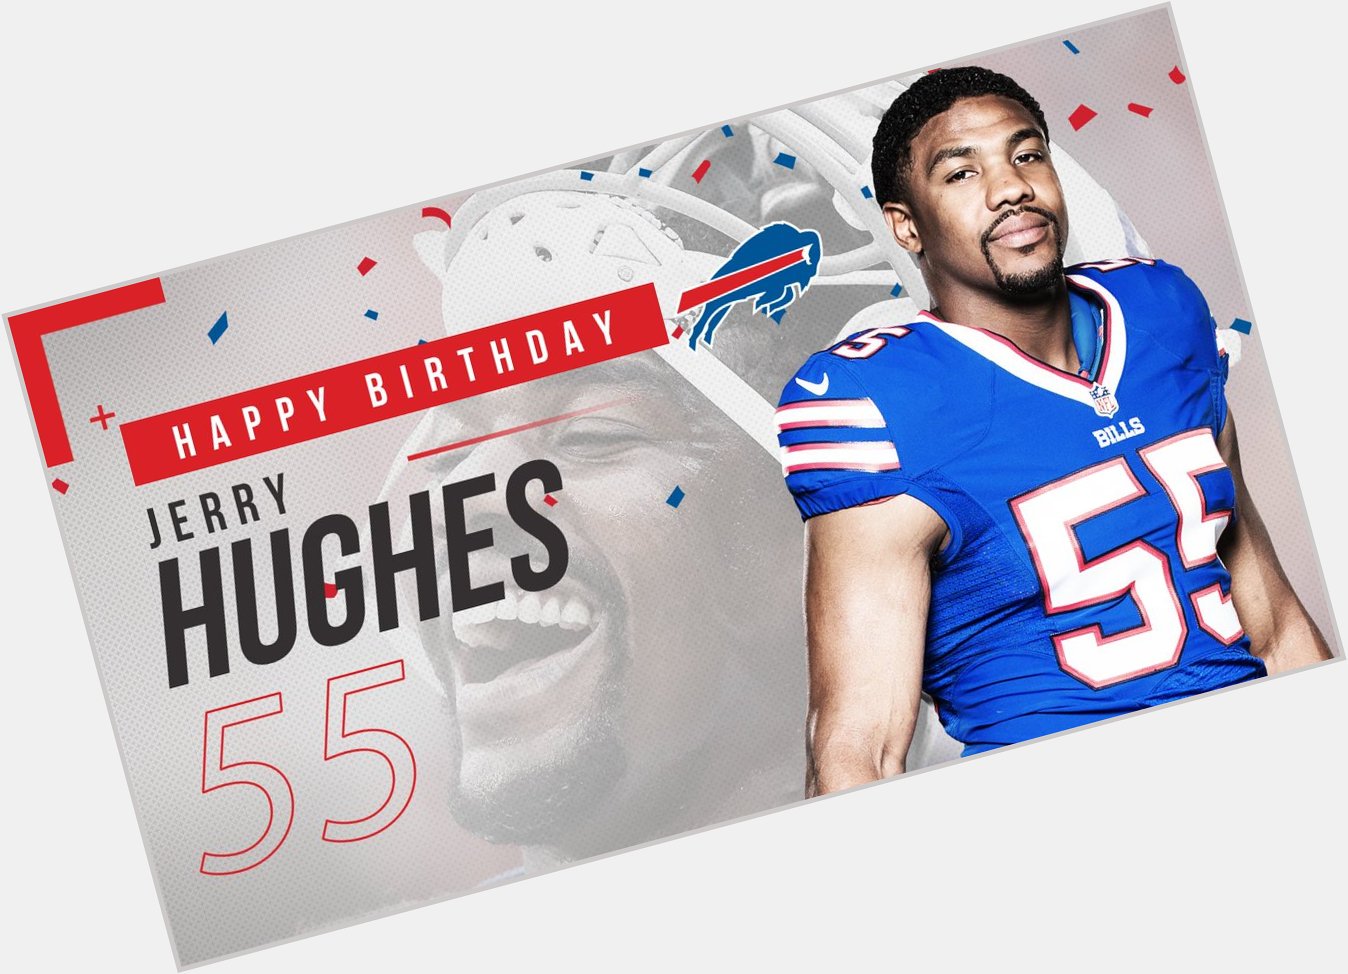   Happy Birthday, Jerry Hughes! 